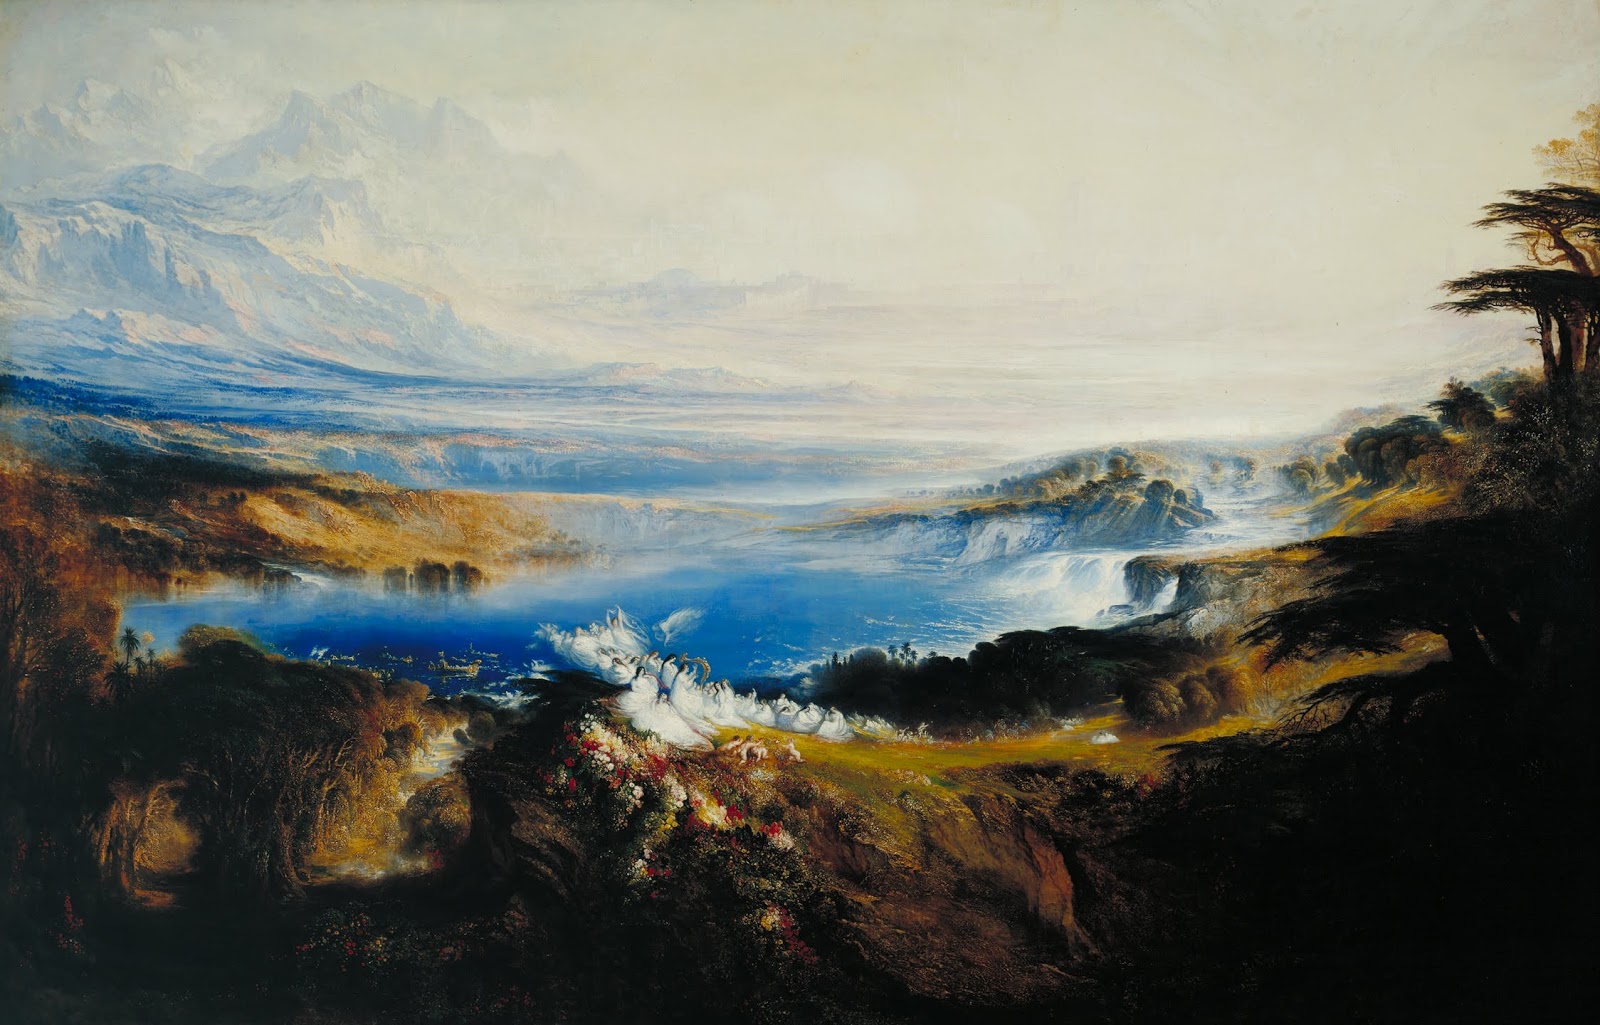 John+Martin+Landscape-1789-1854 (36).jpg